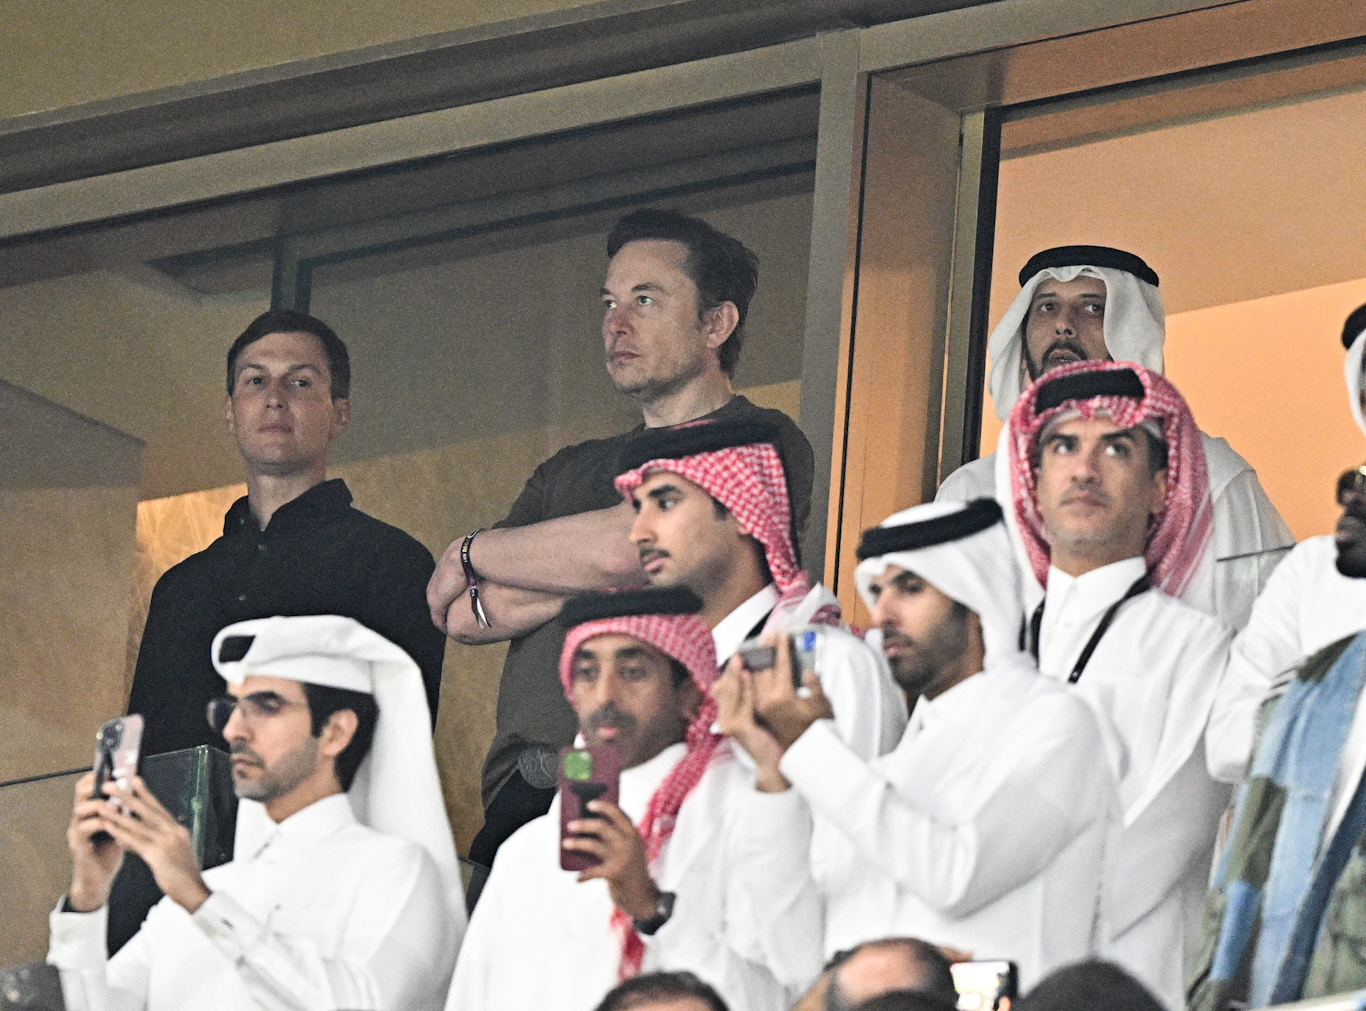 Musk, en el centro, junto al muy proisraelí Jared Kushner, a la izquierda, durante la Copa Mundial de la FIFA 2022 en Catar, el 18 de diciembre de 2022. David Niviere | Sipa vía AP Images